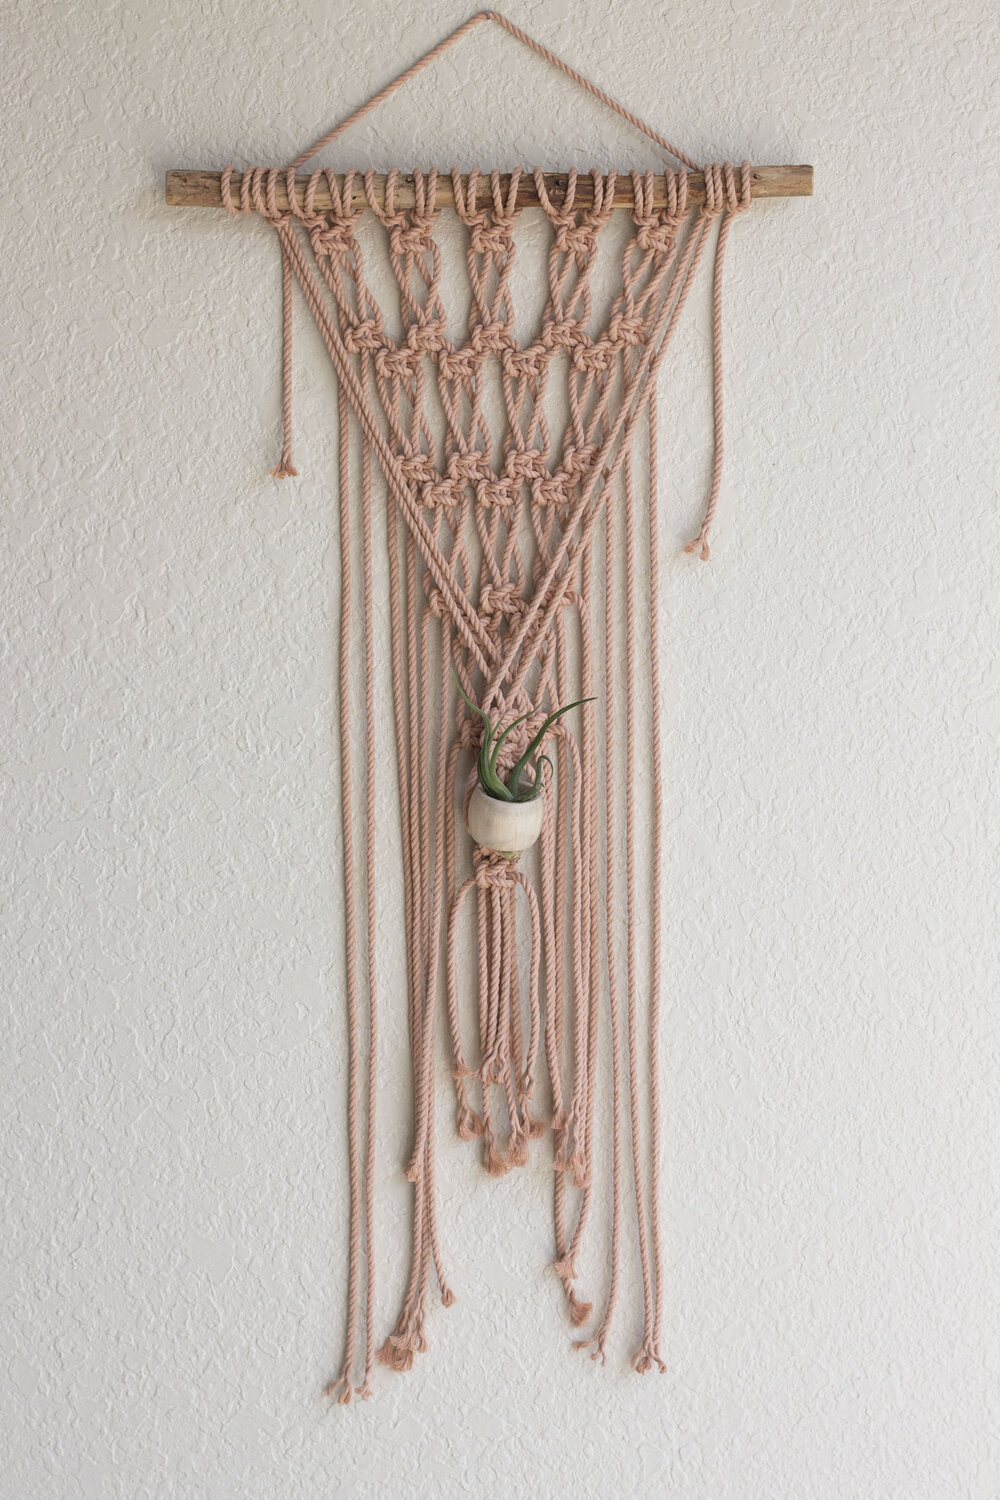 Macrame Wall Hanging DIY Kit